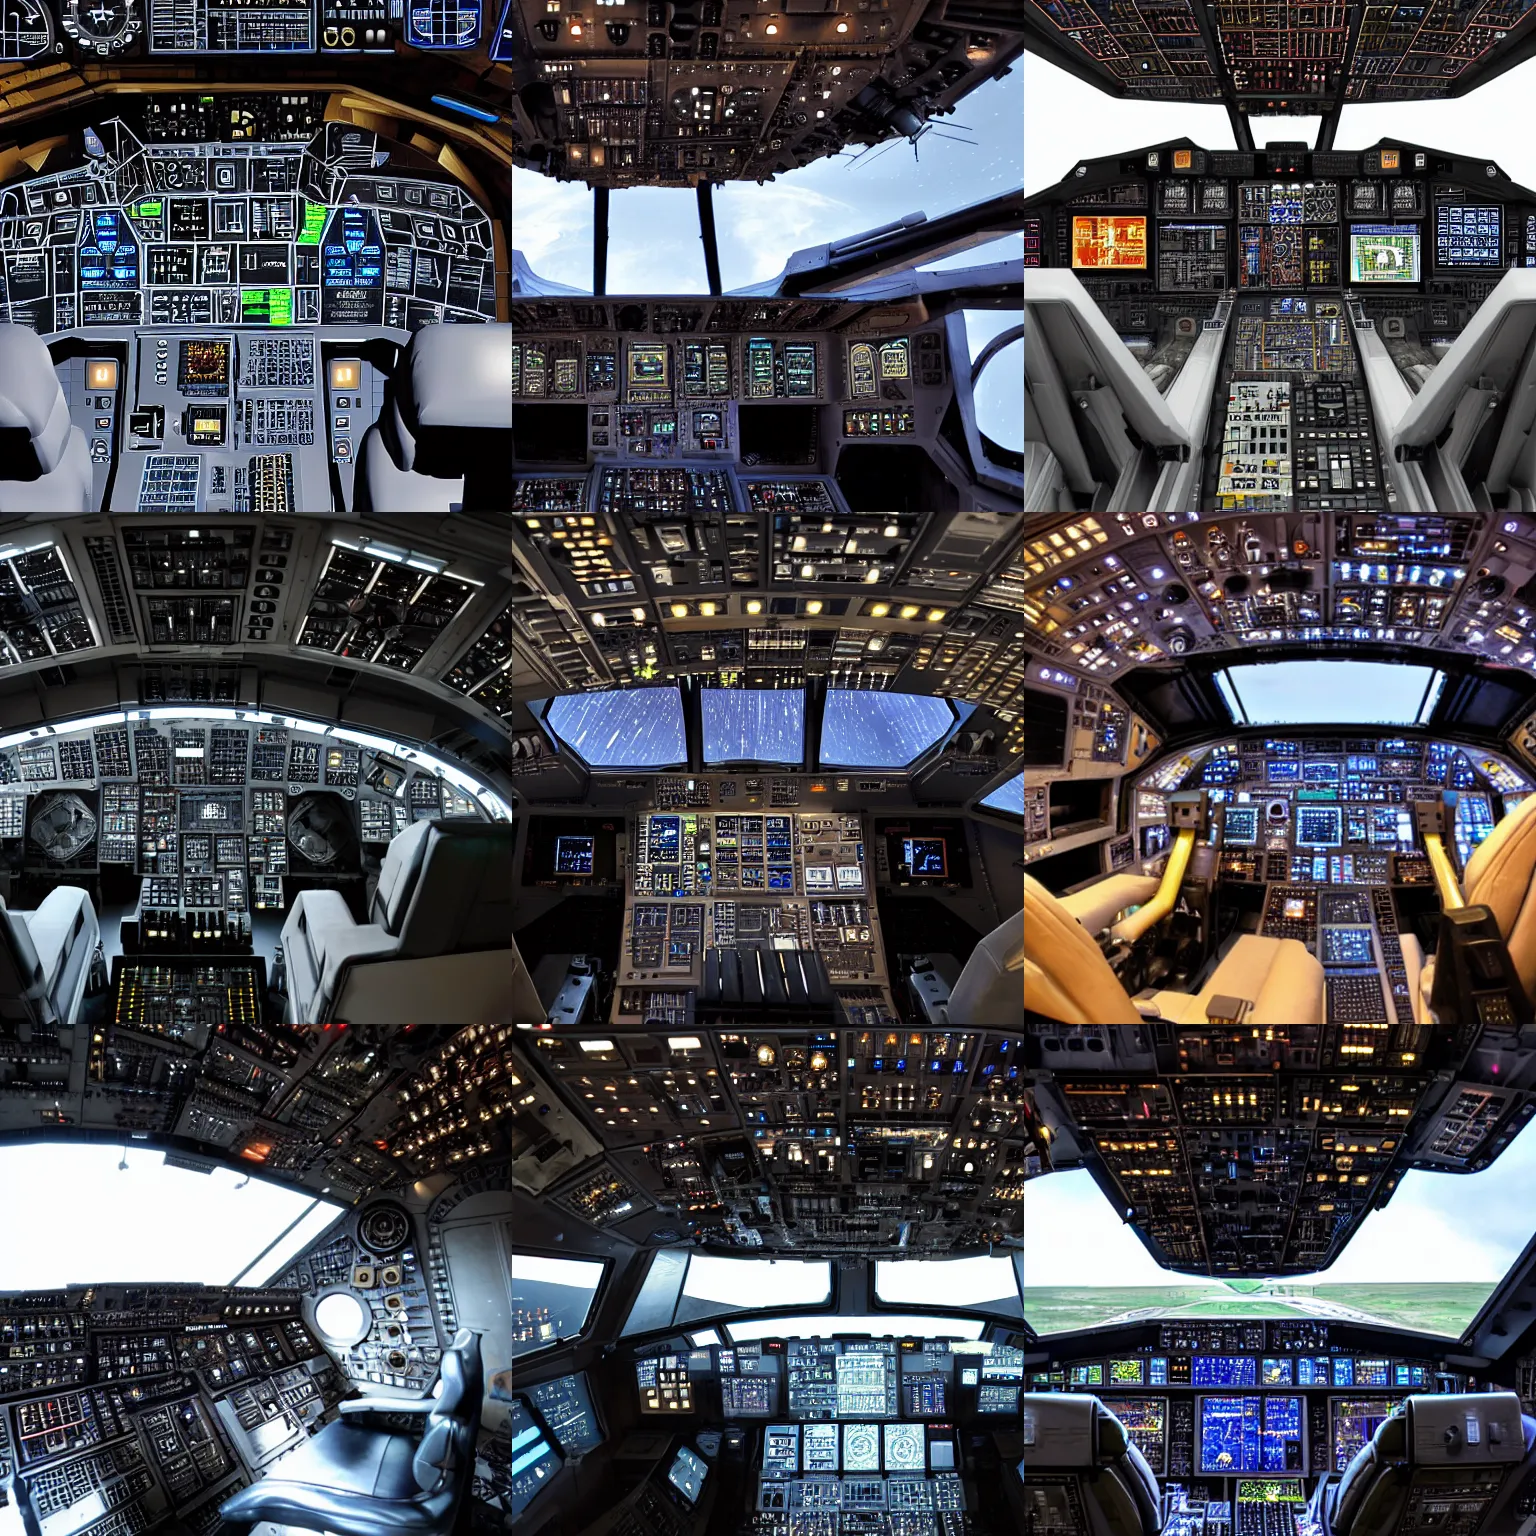 Prompt: millennium falcon cockpit